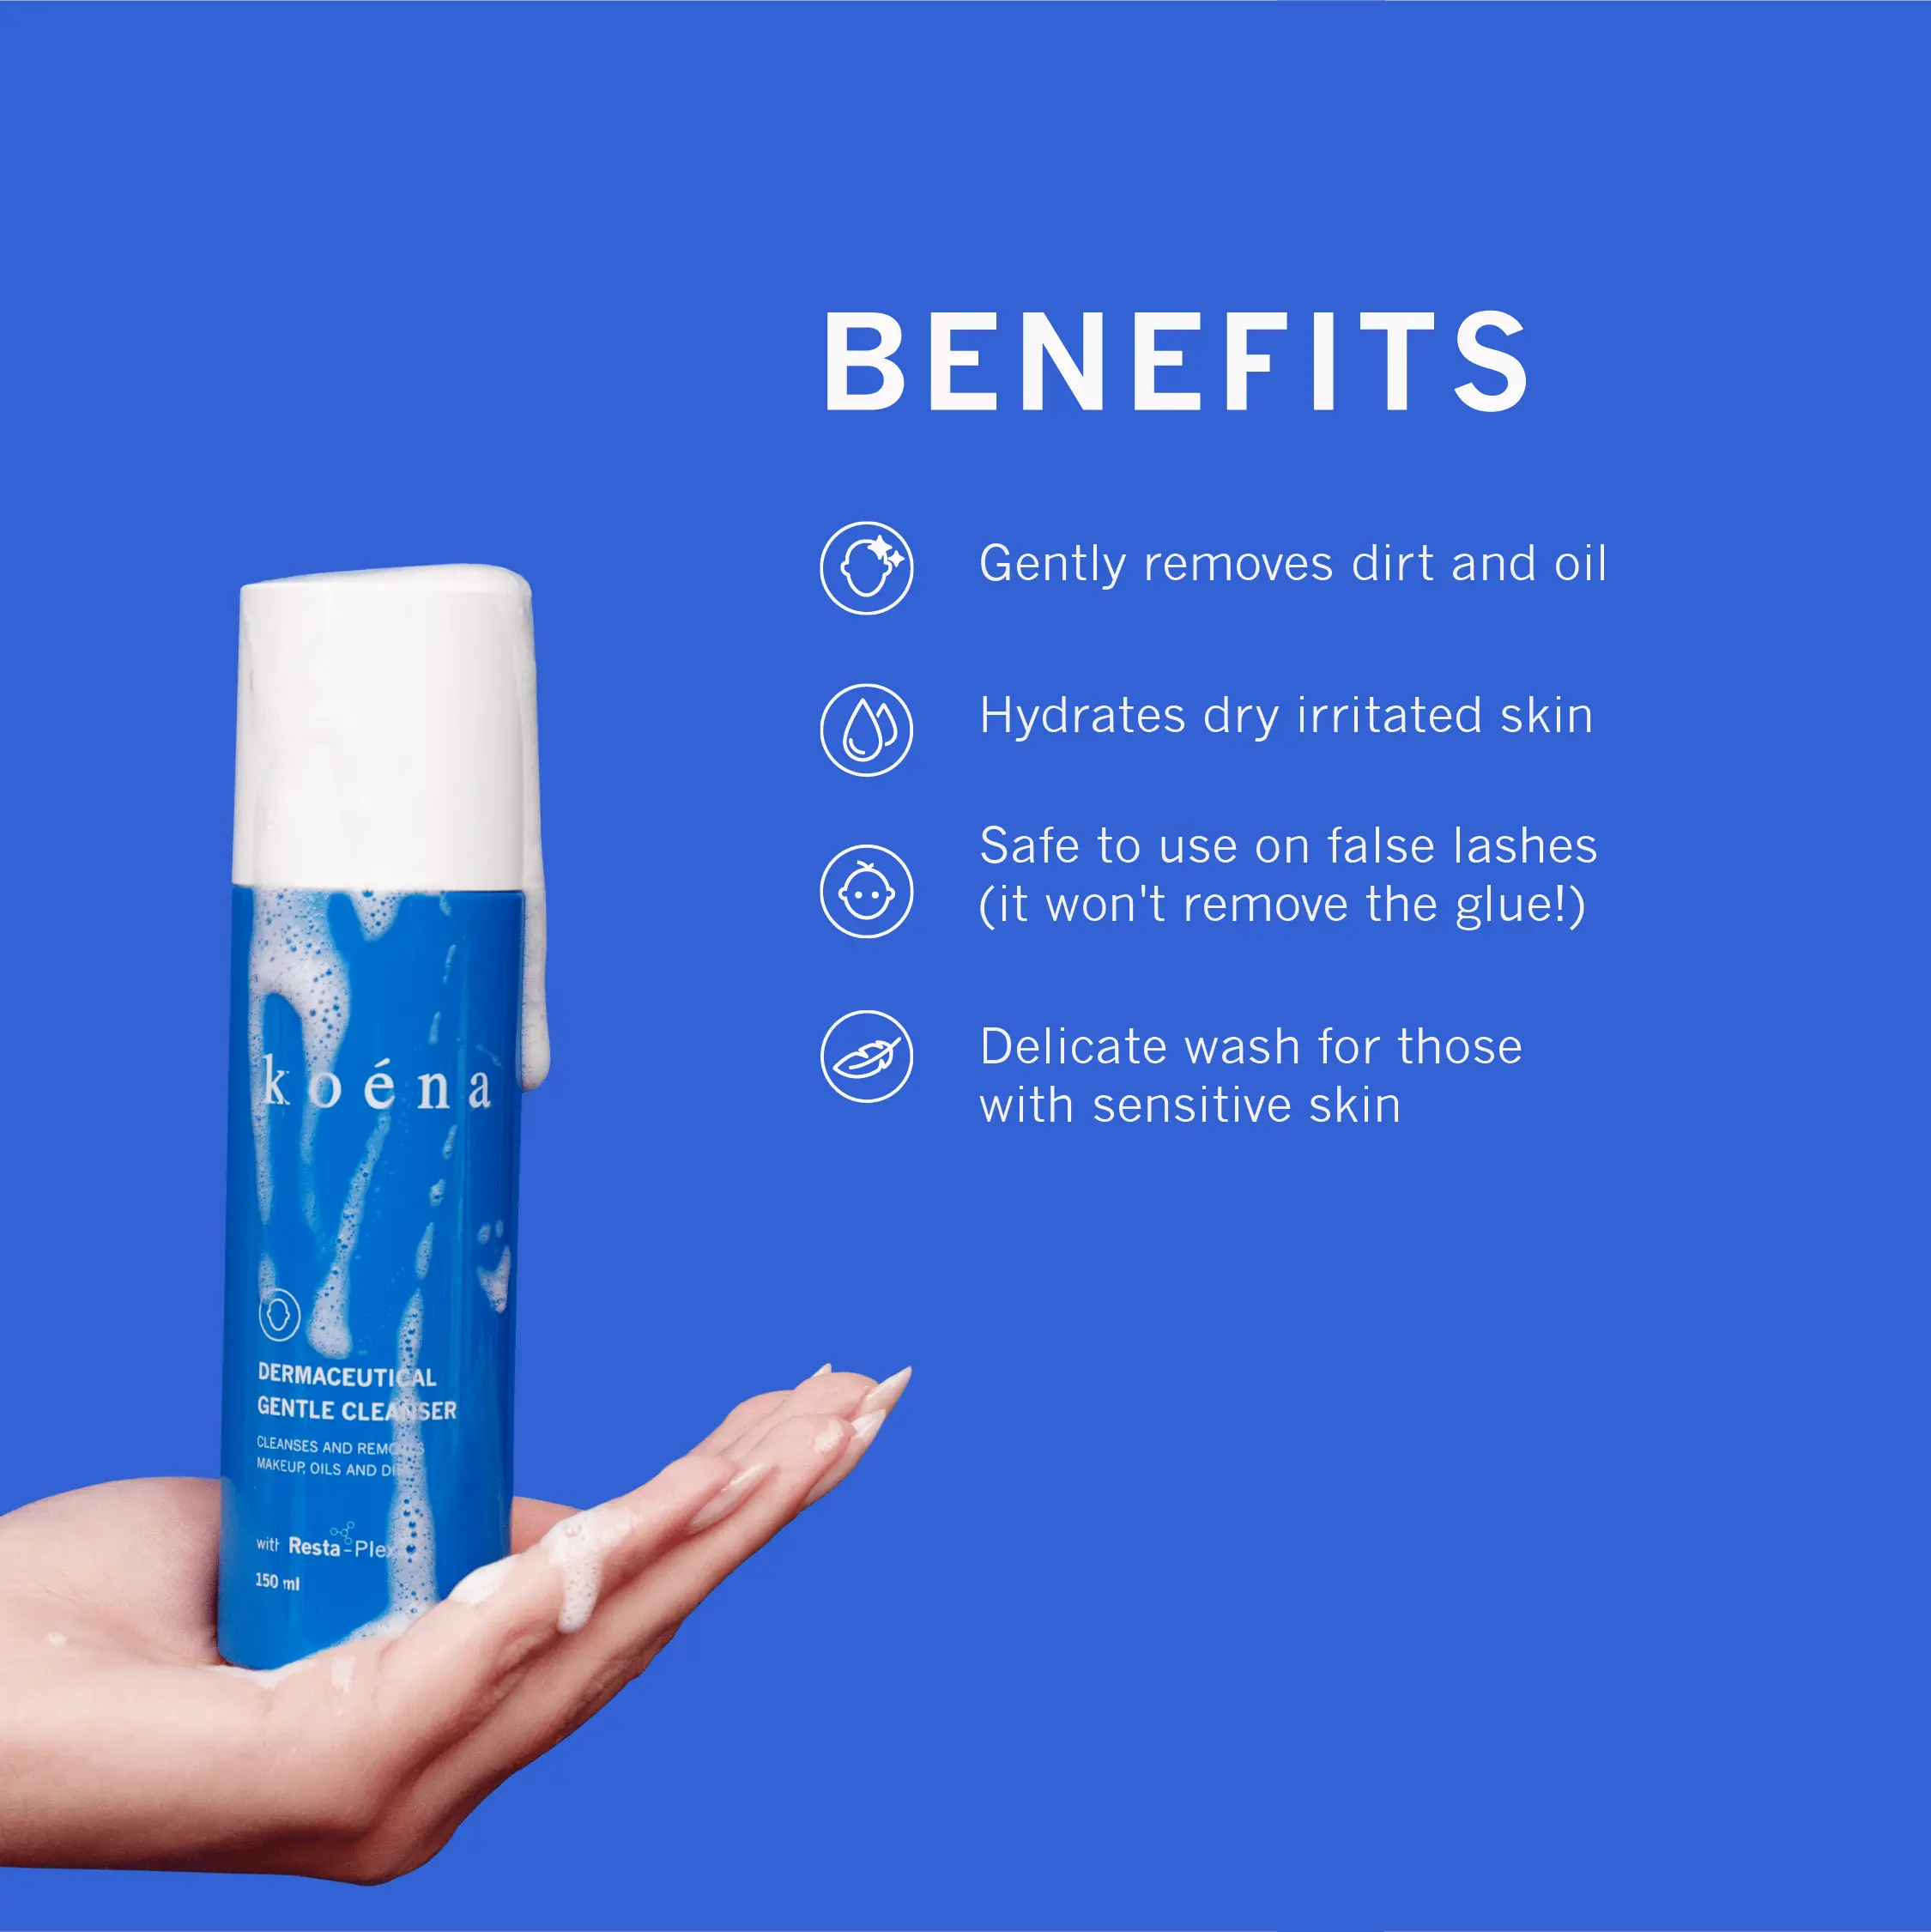 Cleanser | Koéna Dermaceutical Gentle Cleanser 150ml Koena